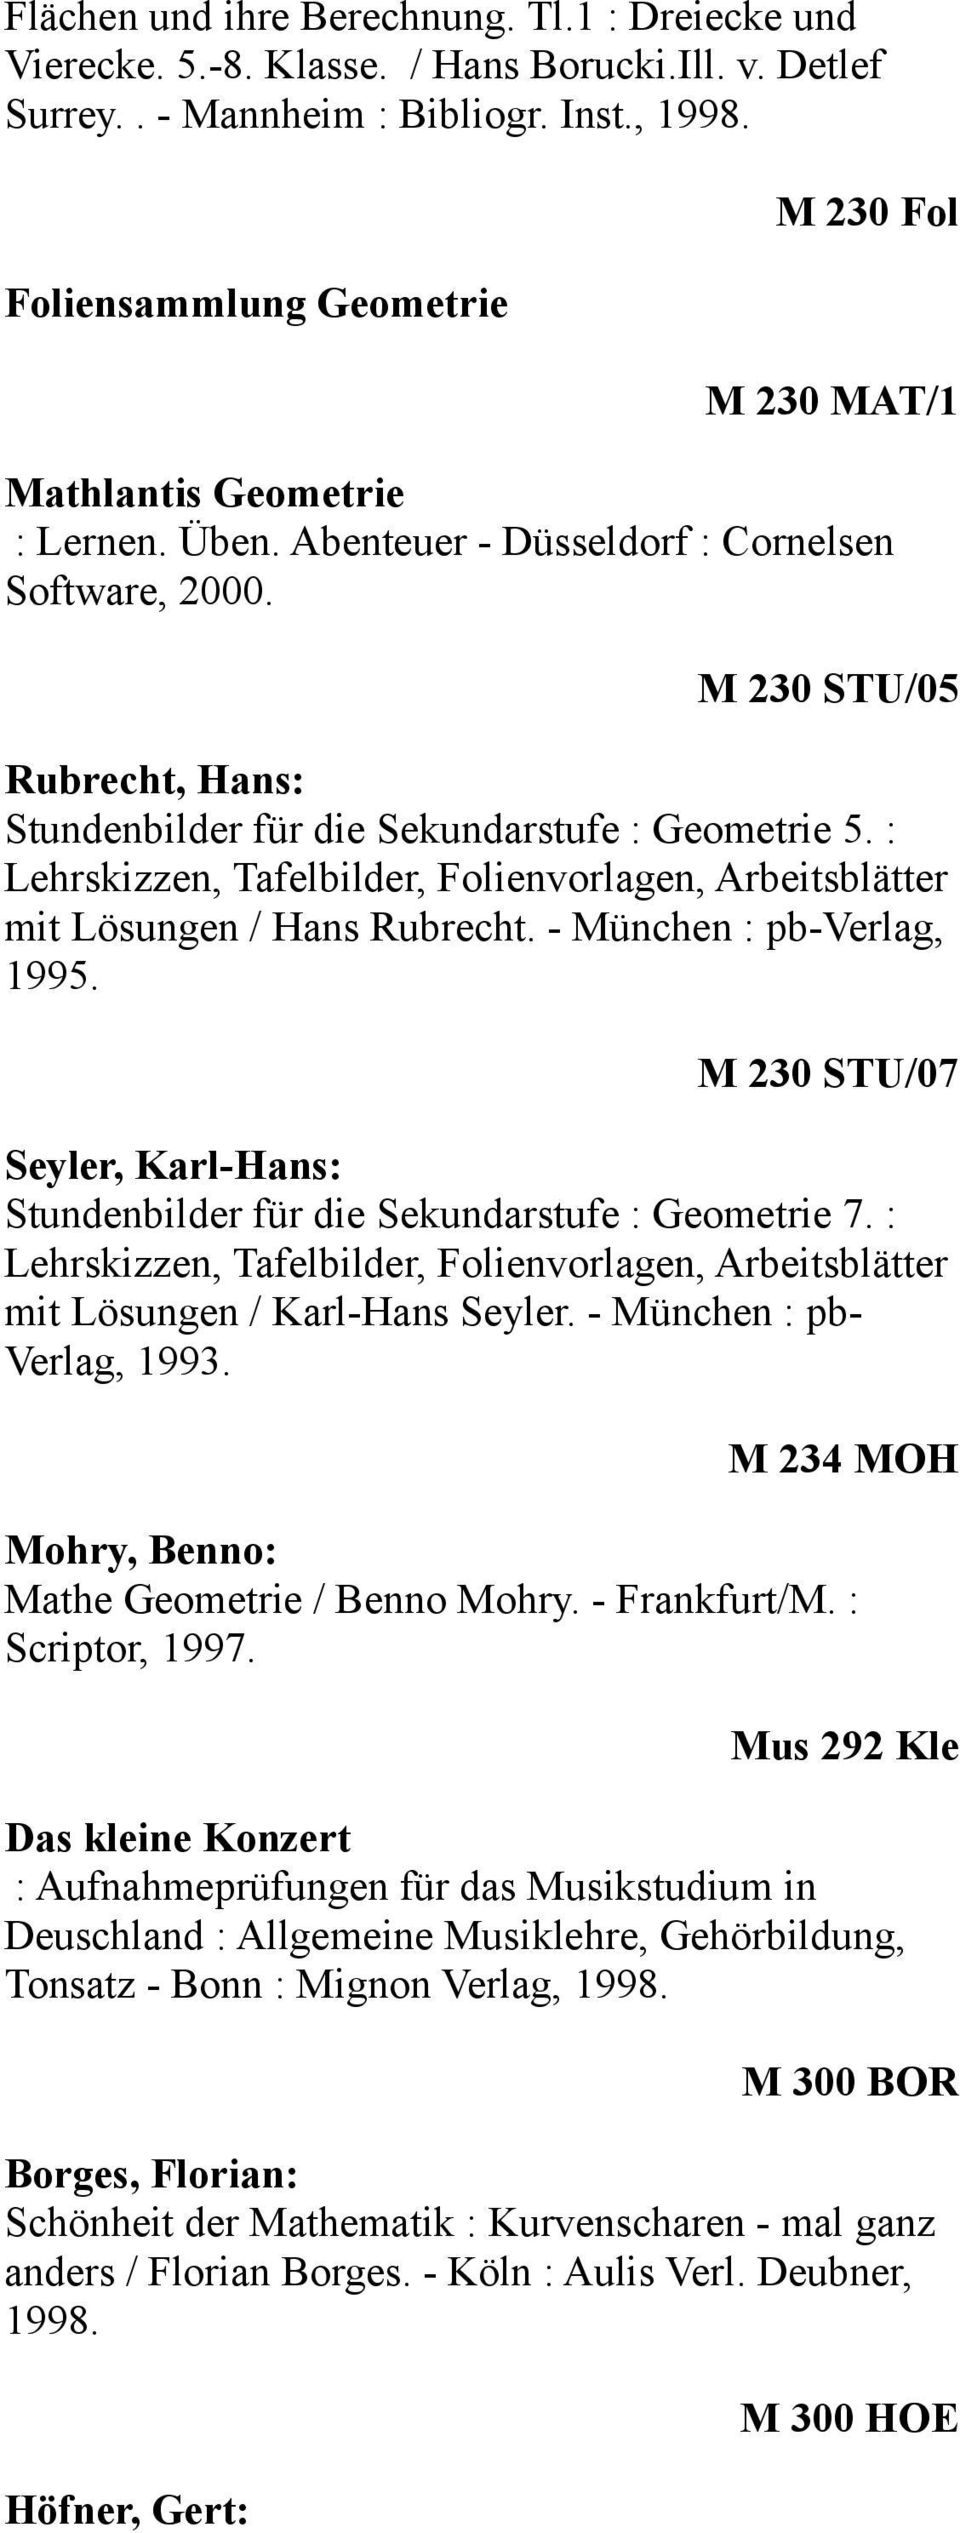 M 230 STU/05 Rubrecht, Hans: Stundenbilder für die Sekundarstufe : Geometrie 5. : Lehrskizzen, Tafelbilder, Folienvorlagen, Arbeitsblätter mit Lösungen / Hans Rubrecht. - München : pb-verlag, 1995.